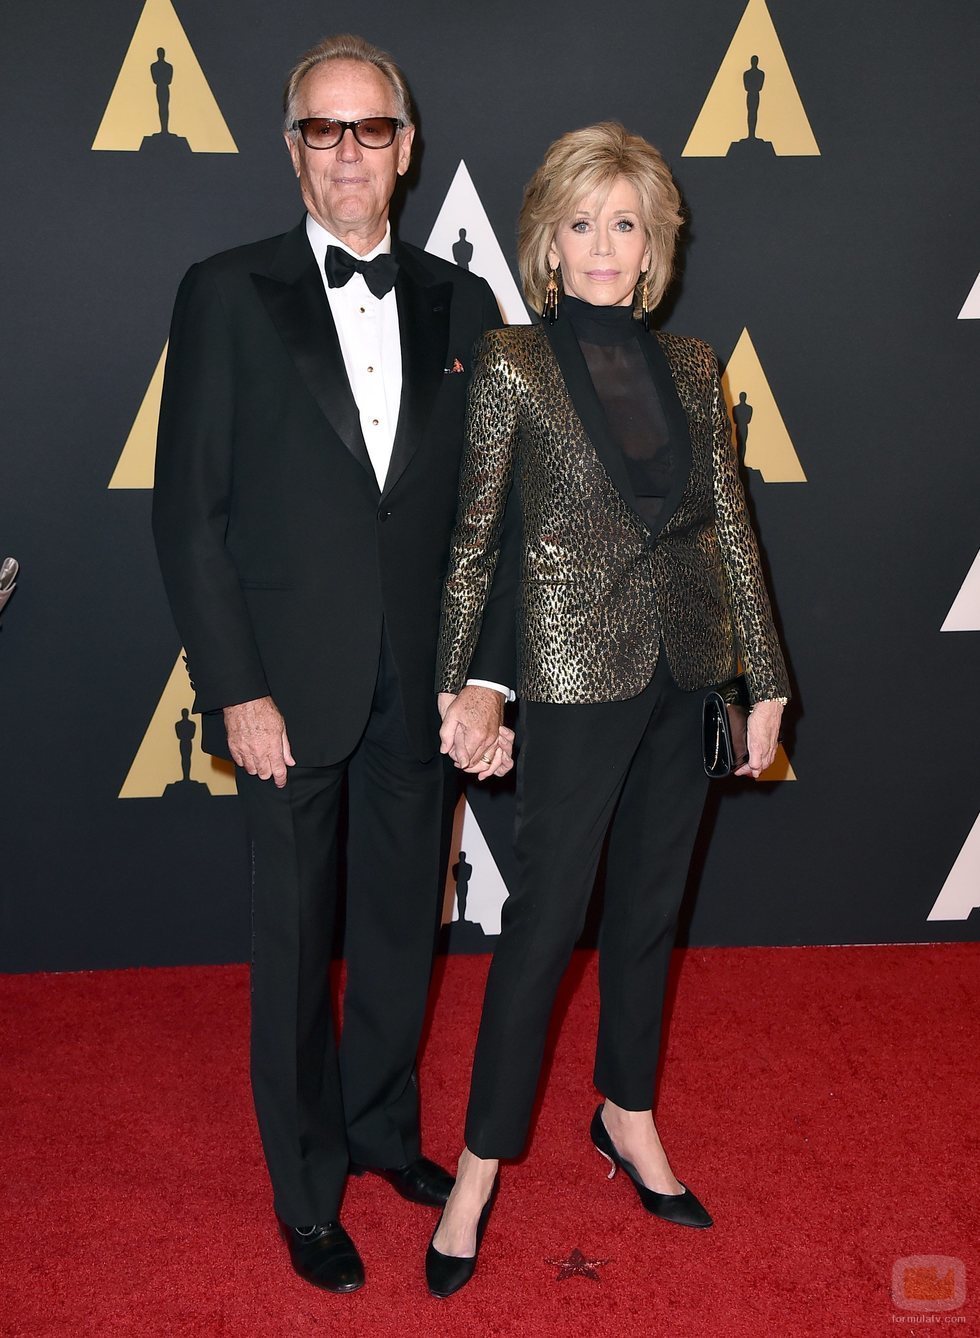 Peter y Jane Fonda en los premios Oscar